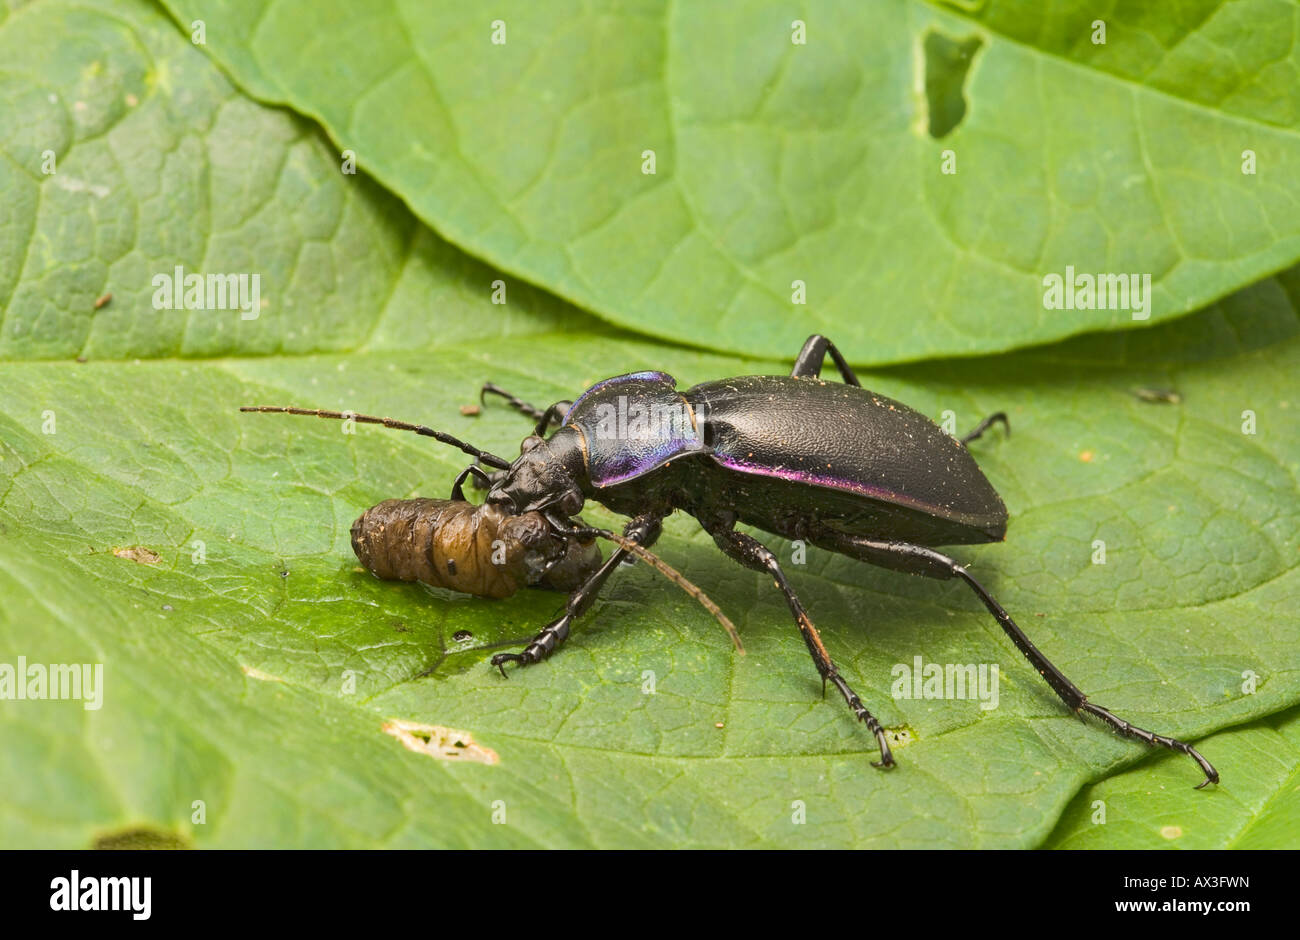 Massa viola beetle Carabus tendente al violaceo sulla alimentazione leatherjacket Foto Stock